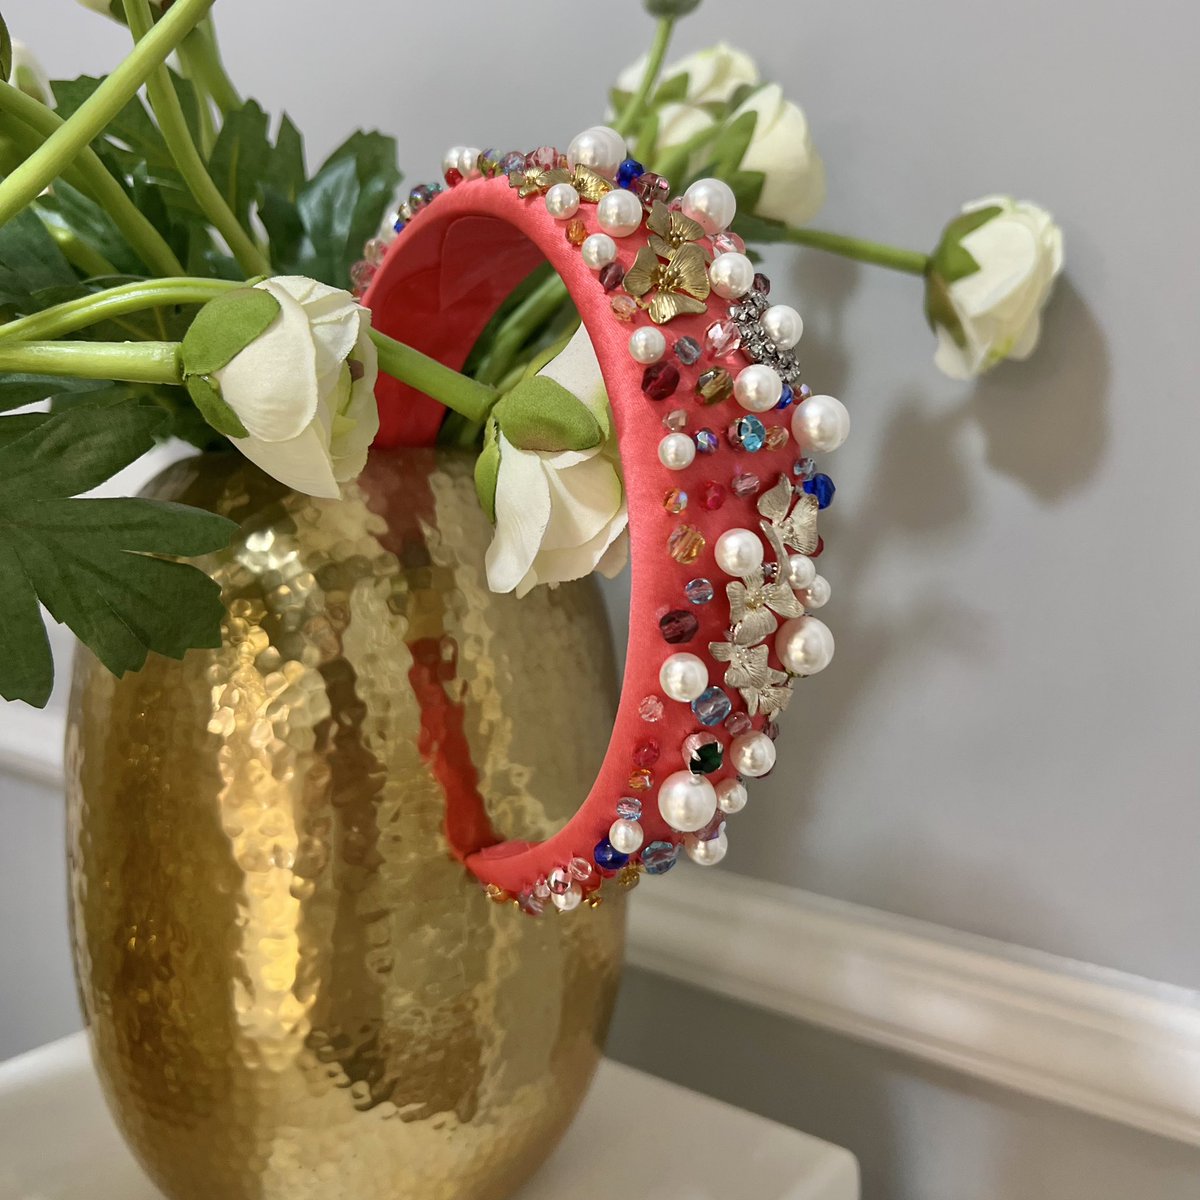 Nuestras #diademas_joya son únicas 😍😍😍.
.
.
Se realizan envíos a toda España. 
.
.
#airun #airuntocados #tocadosairun #anillo #ring #pendientes #earrings #bolso #bag #diadema #diadema_joya #invitada #invitadaperfecta #invitadasboda #invitadaideal #invitadaelegante #artesania